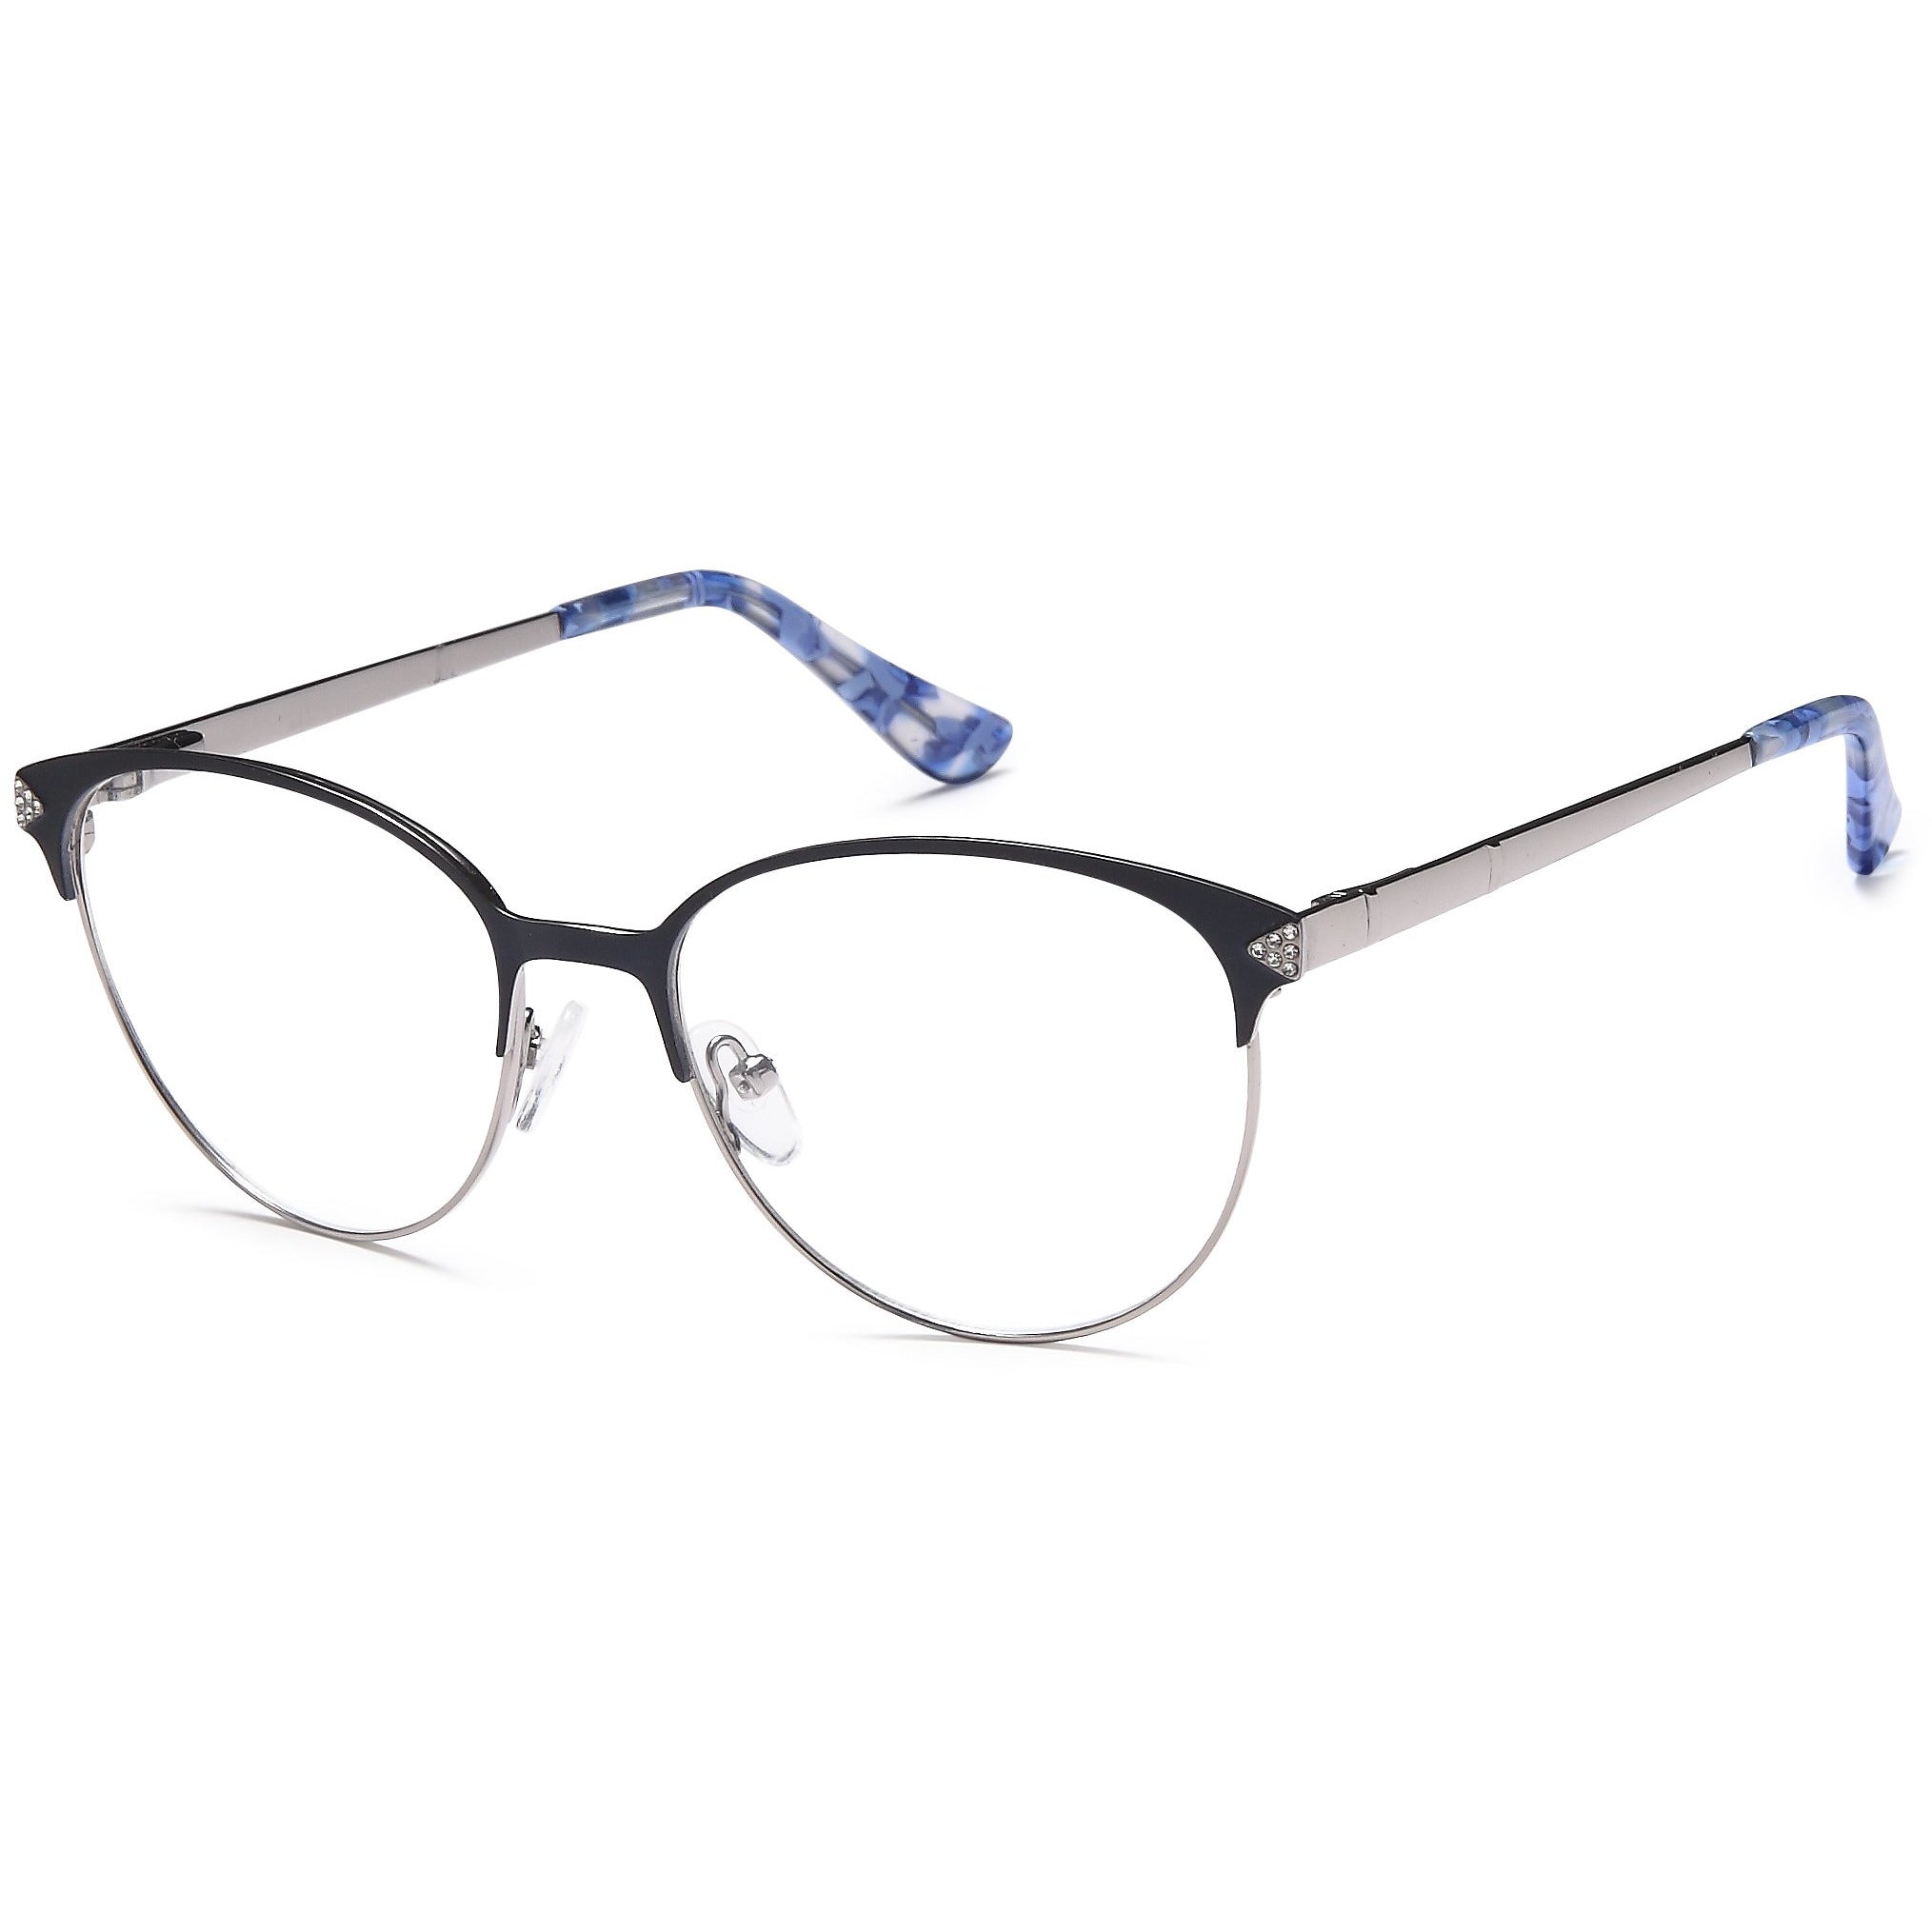 Leonardo Prescription Glasses DC 188 Eyeglasses Frame | express-glasses